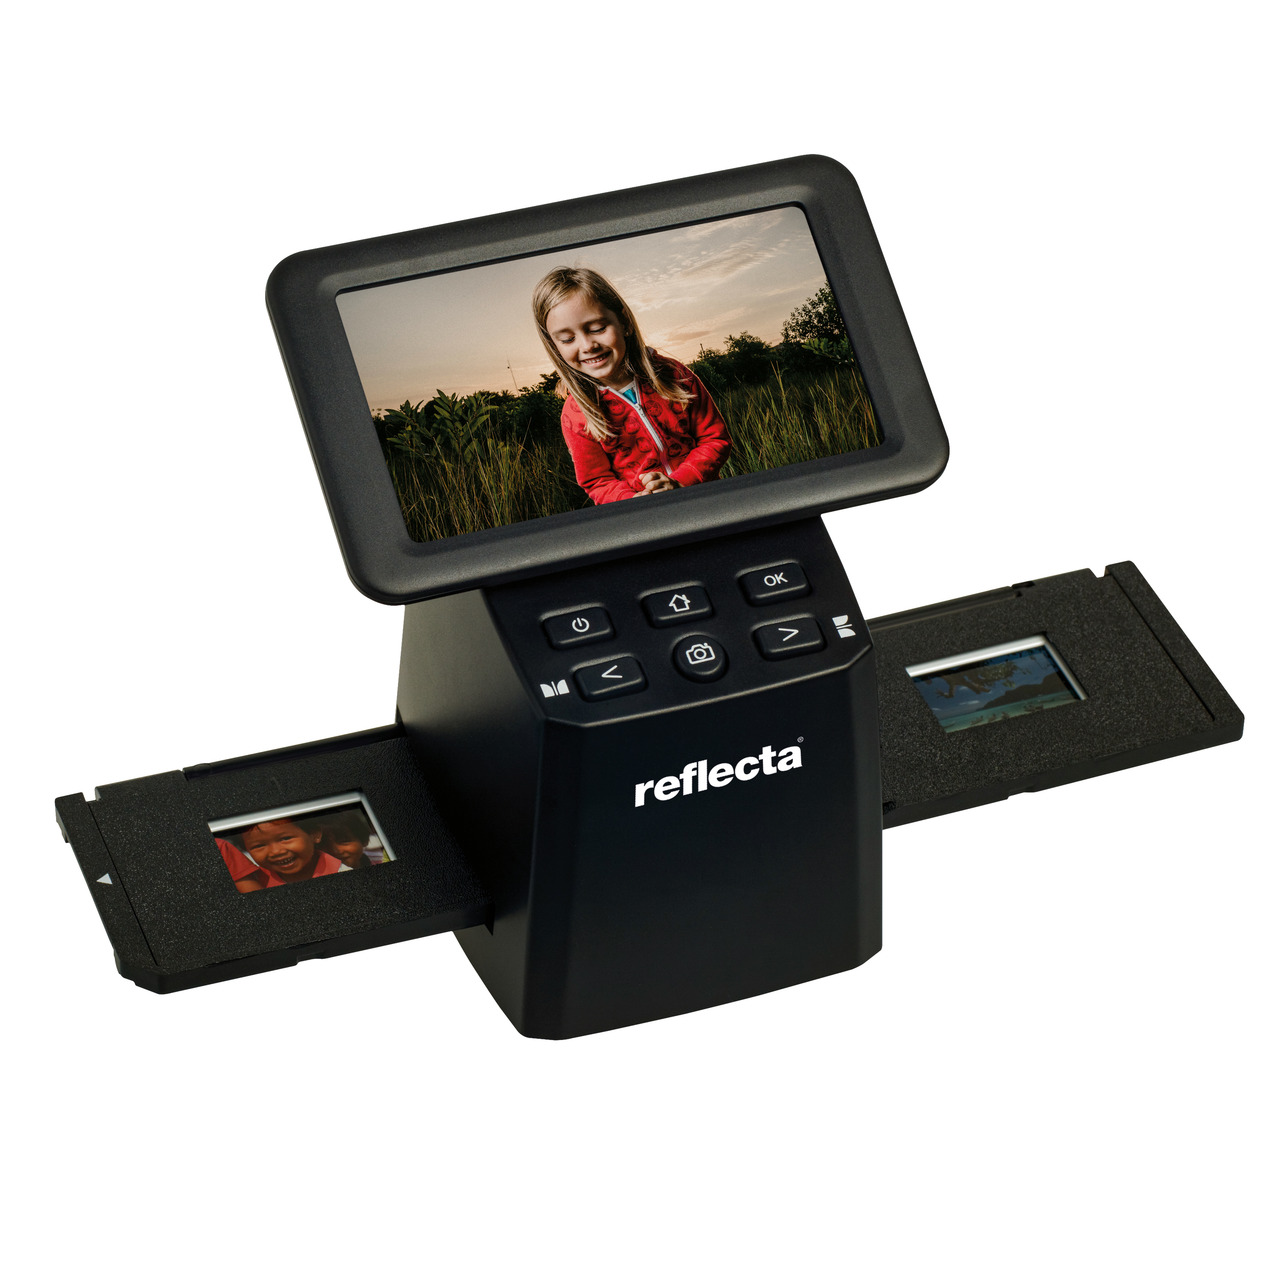 reflecta Dia-Negativscanner x33-Scan- 15-3 Megapixel- IPS-Display 12-7 cm (5)- RGB-Farbanpassung